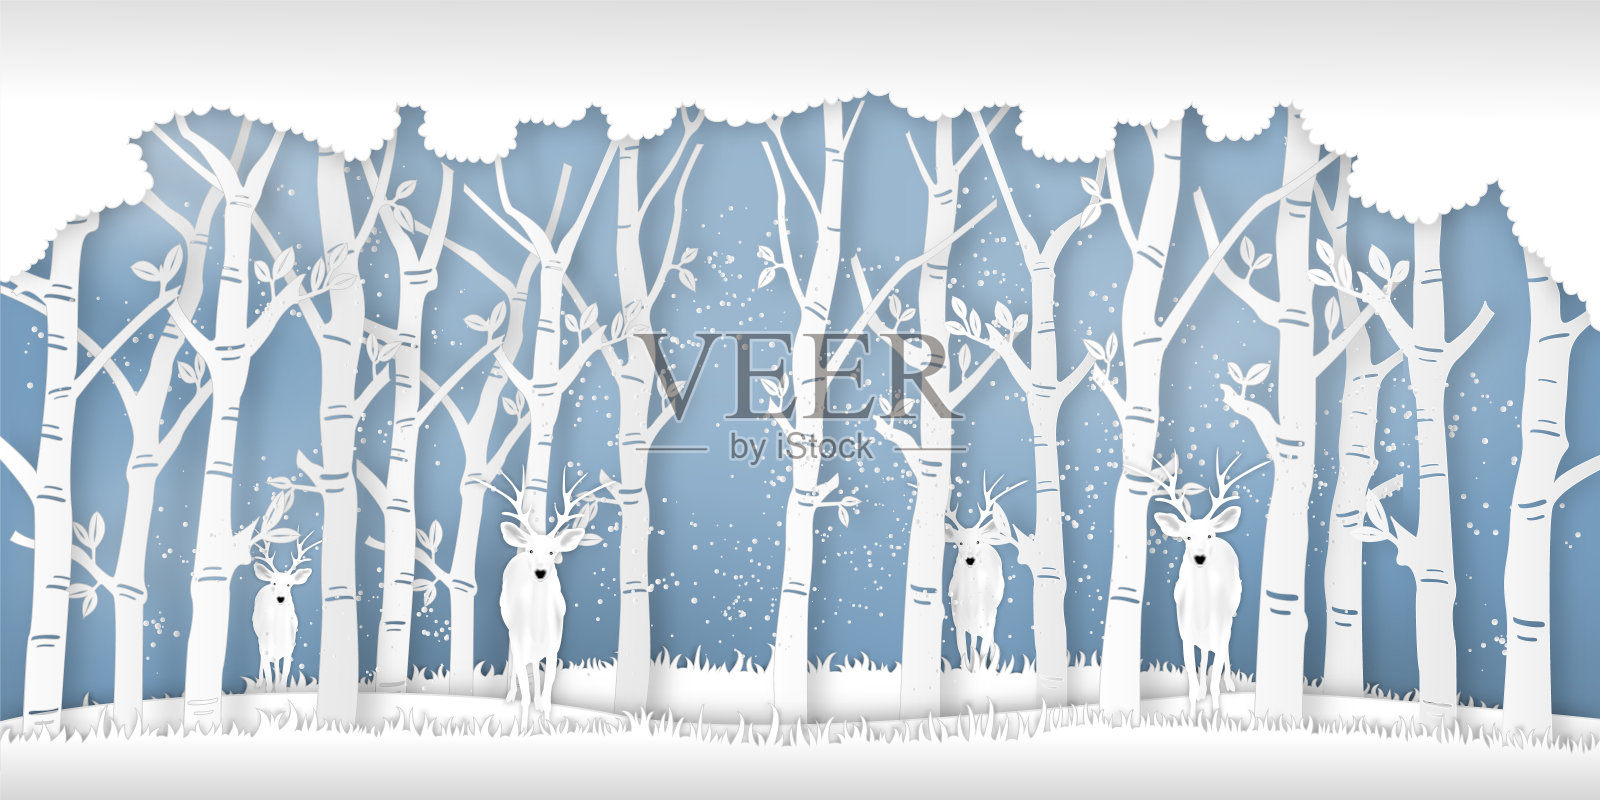 鹿群在冬季的森林里以树和雪作为纸艺术和数码工艺的风格概念。矢量图插画图片素材